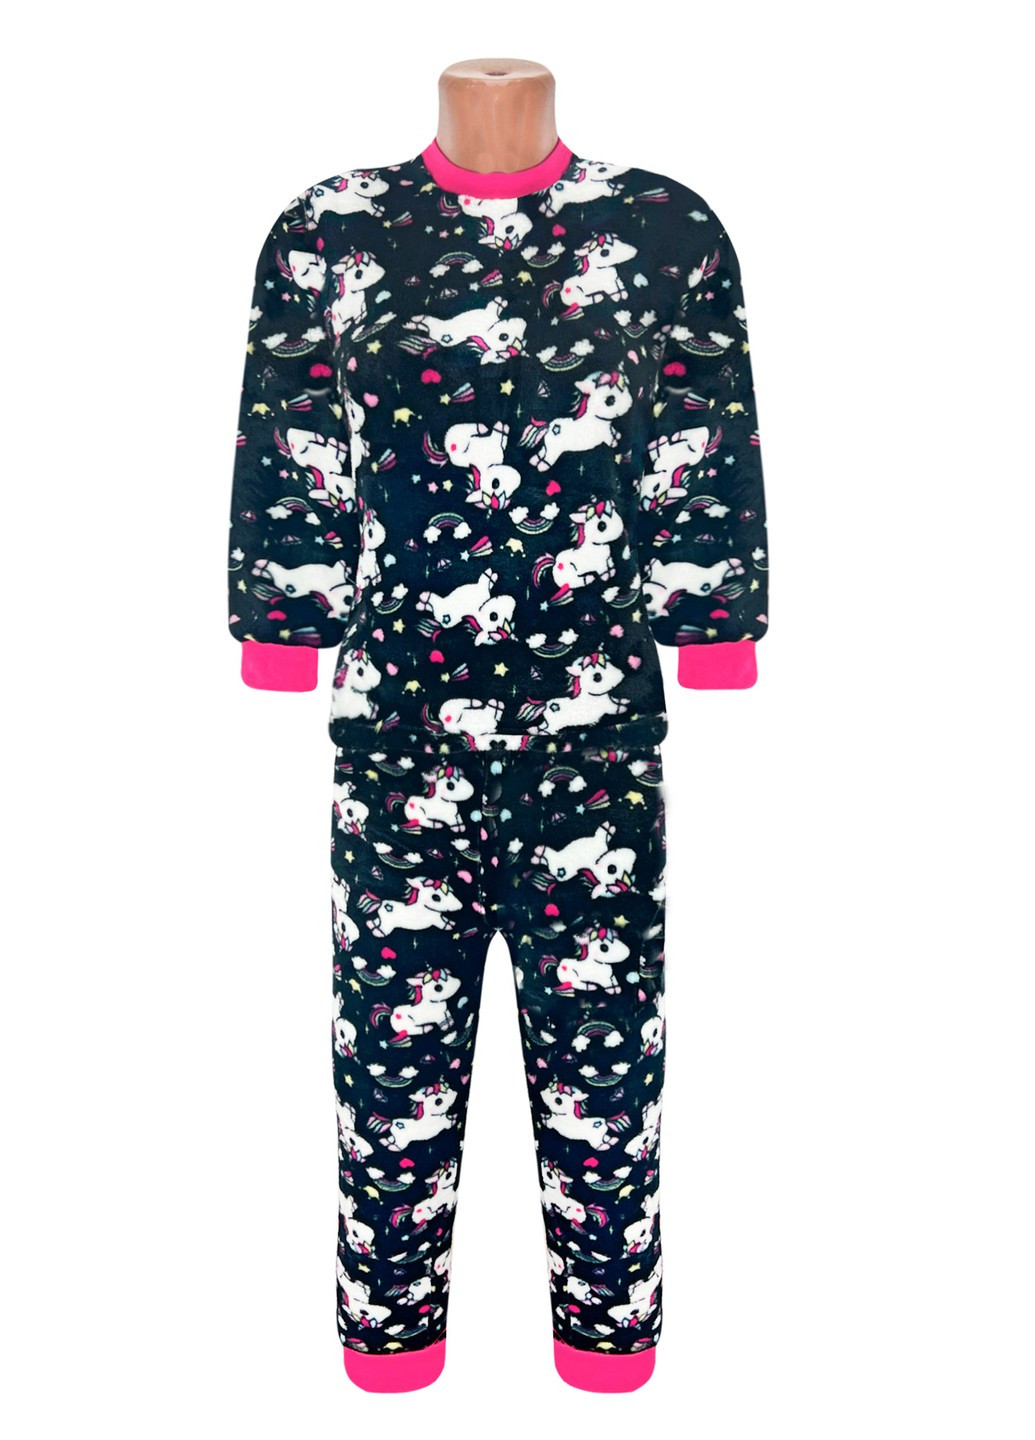 Черная всесезон пижама детская махровая пони Жемчужина стилей 4001